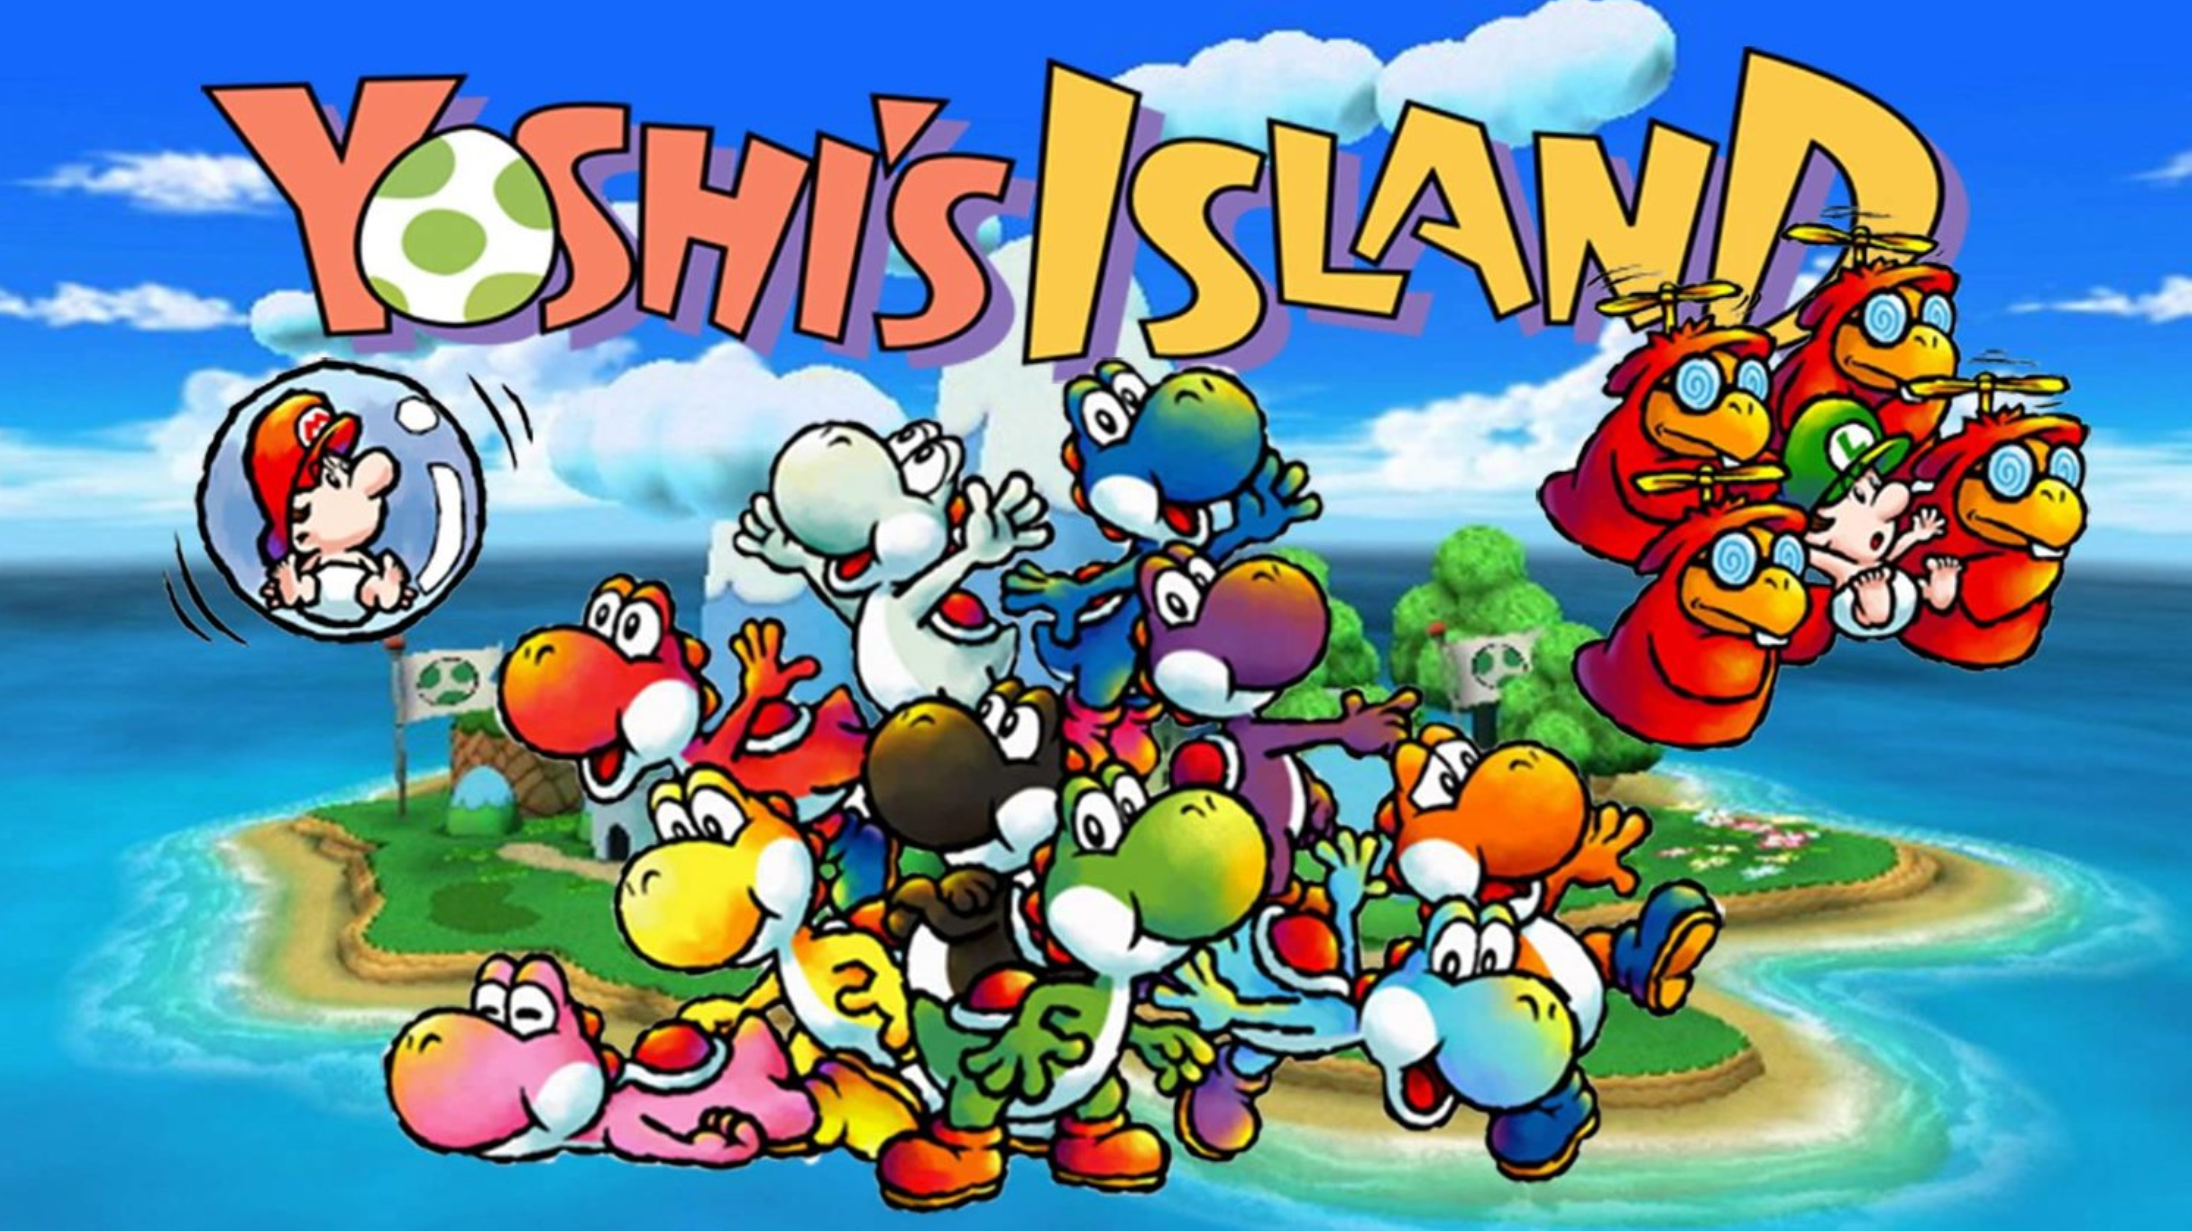 Super mario world. Super Mario World 2 Yoshis Island. Марио Yoshi's Island. Super Nintendo super Mario World 2 - Yoshi's Island. Super Mario World 2 Yoshi's Island Snes обложка.